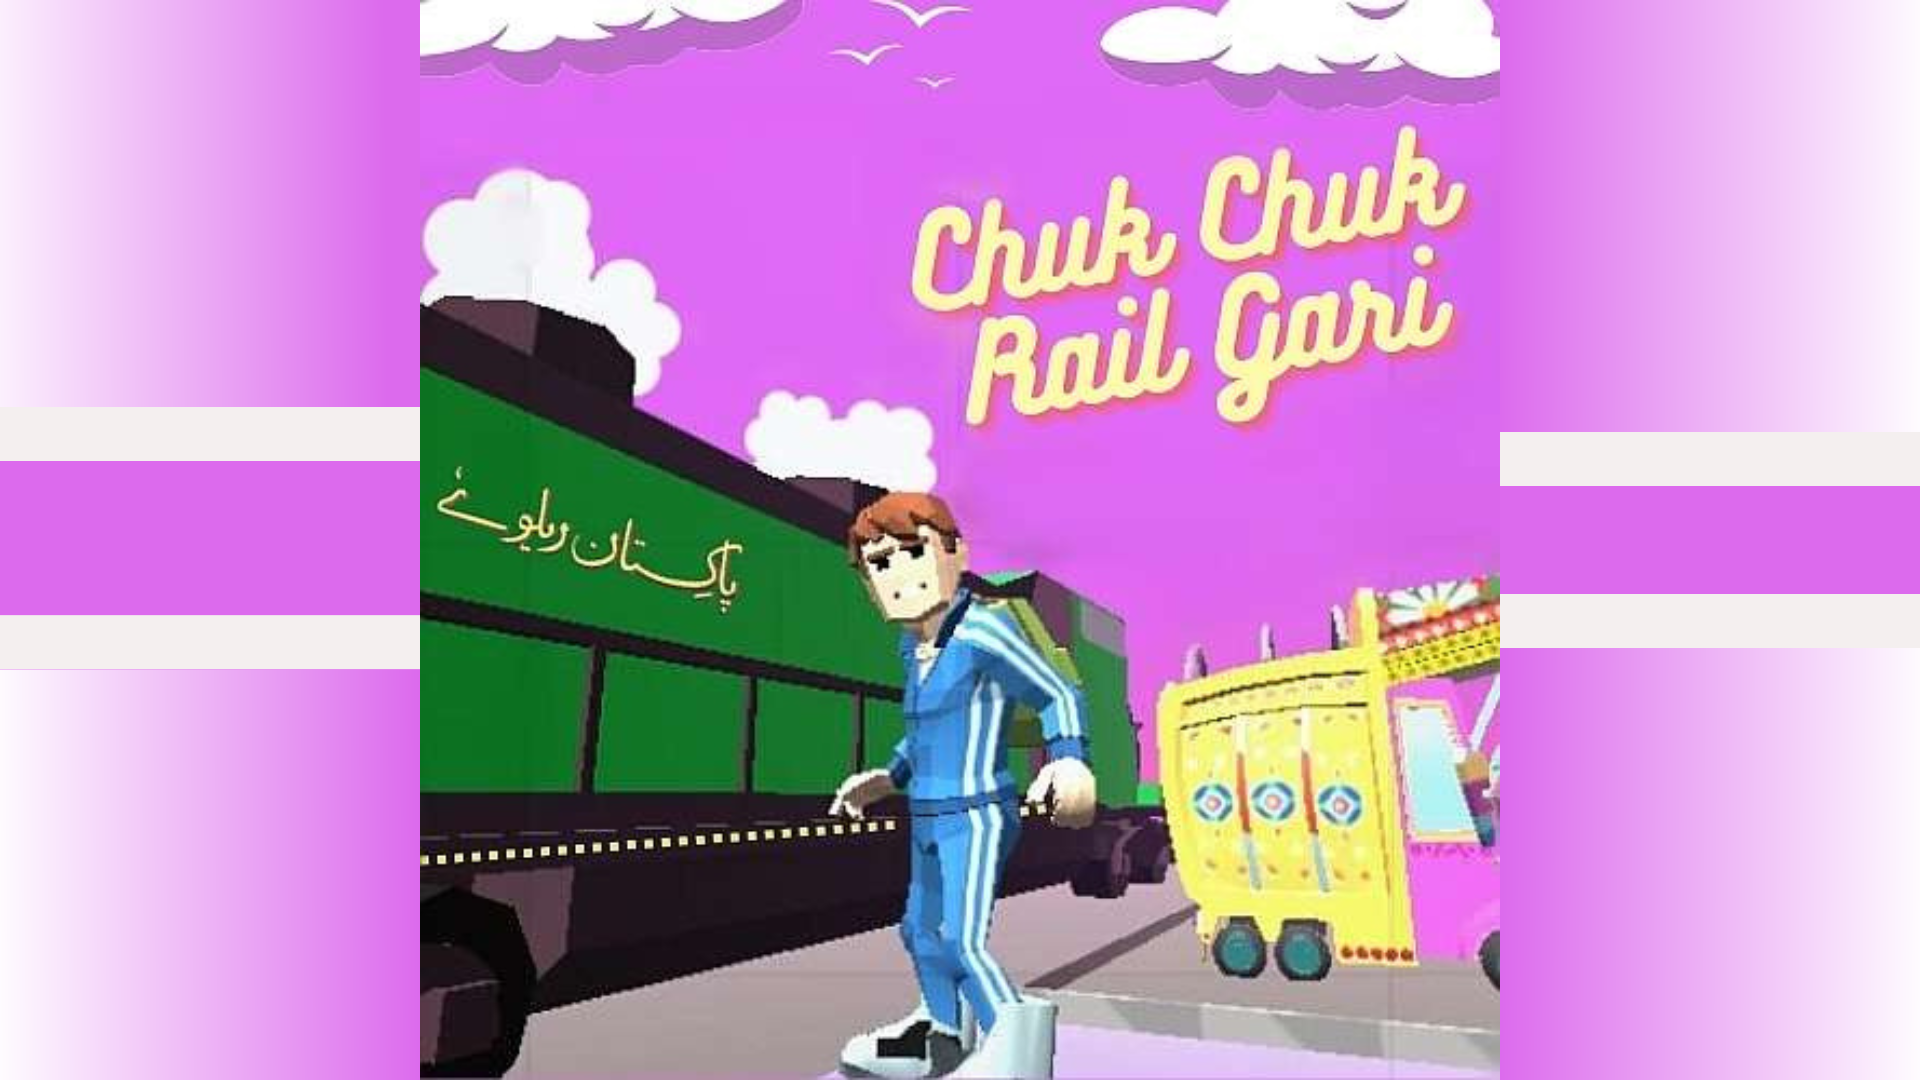 Chuk Chuk Rail Gari